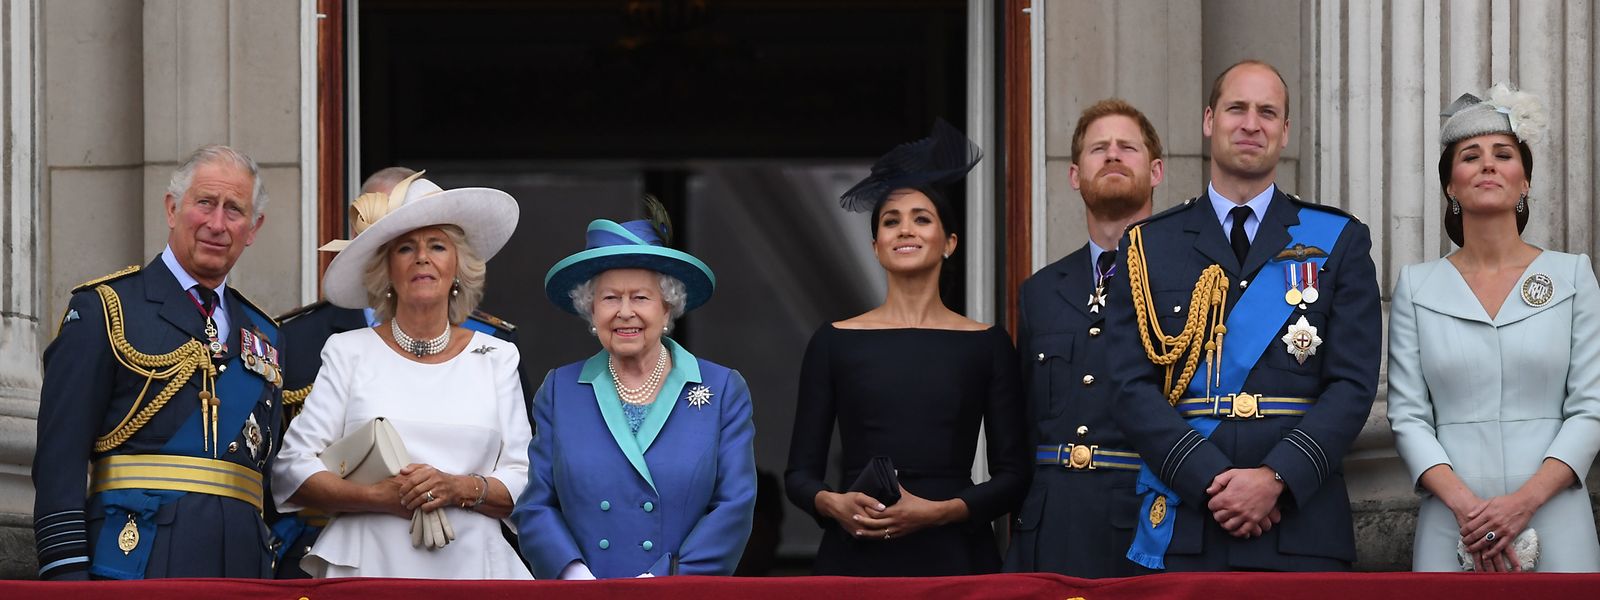 Der britische Thronfolger Prinz Charles (l-r), Herzogin Camilla, die britische Königin Elizabeth II., Herzogin Meghan, Prinz Harry, Prinz William und Herzogin Kate stehen auf dem Balkon des Buckingham-Palasts, um eine Luftparade zum 100. Jahrestag der britischen Luftwaffe zu beobachten. Herzogin Meghan hat dem britischen Königshaus vorgeworfen, Unwahrheiten über sie stehenzulassen.